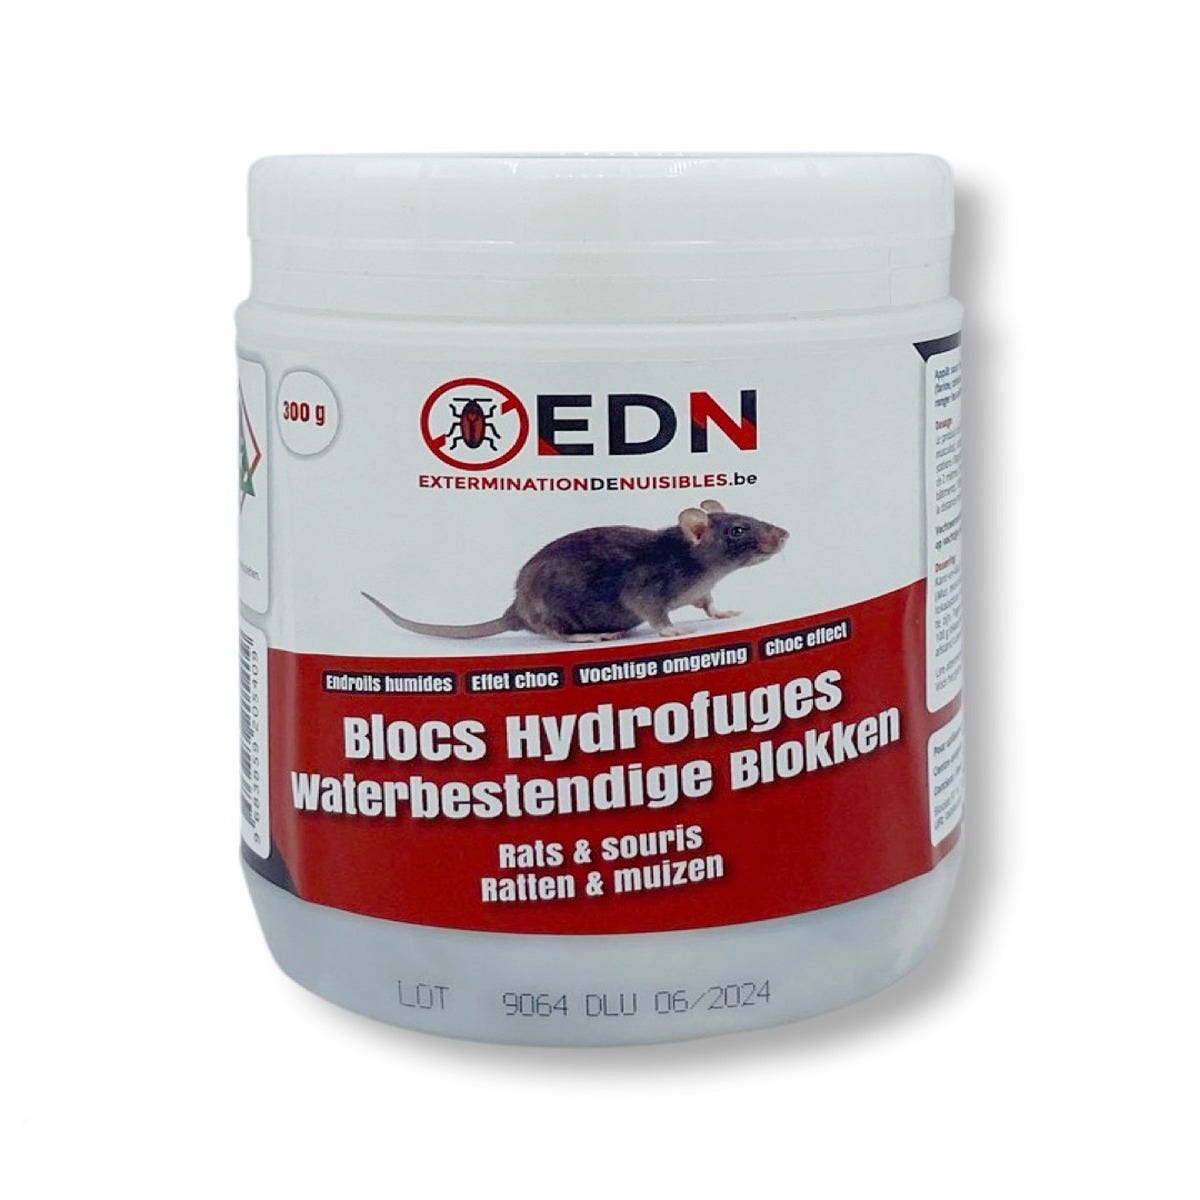 BLOCS HYDROFUGES RATS & SOURIS - 1 STATION RATS + 100 G D'APPATS